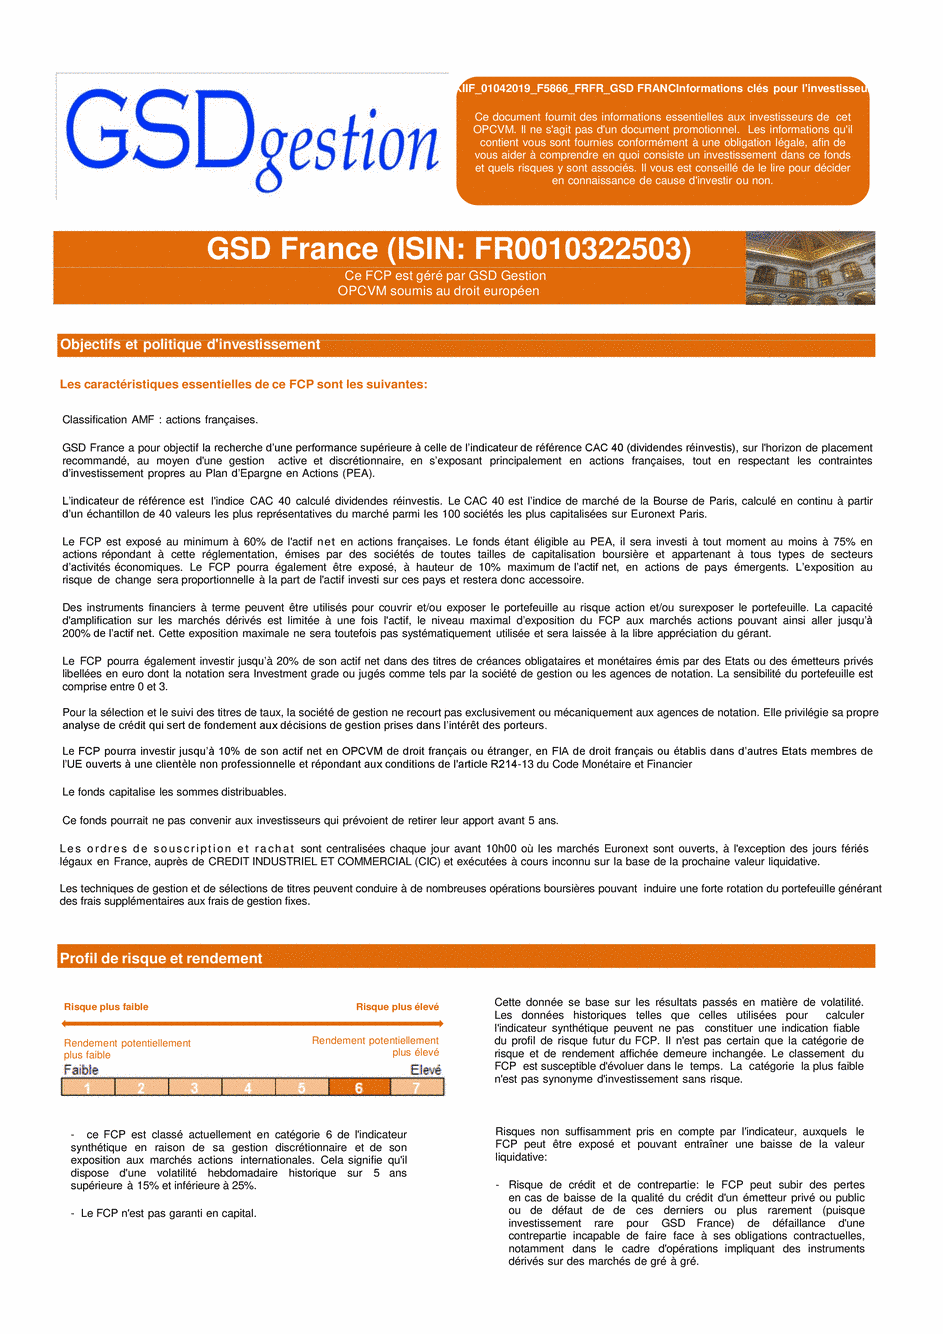 DICI-Prospectus Complet GSD France - 13/01/2020 - Français